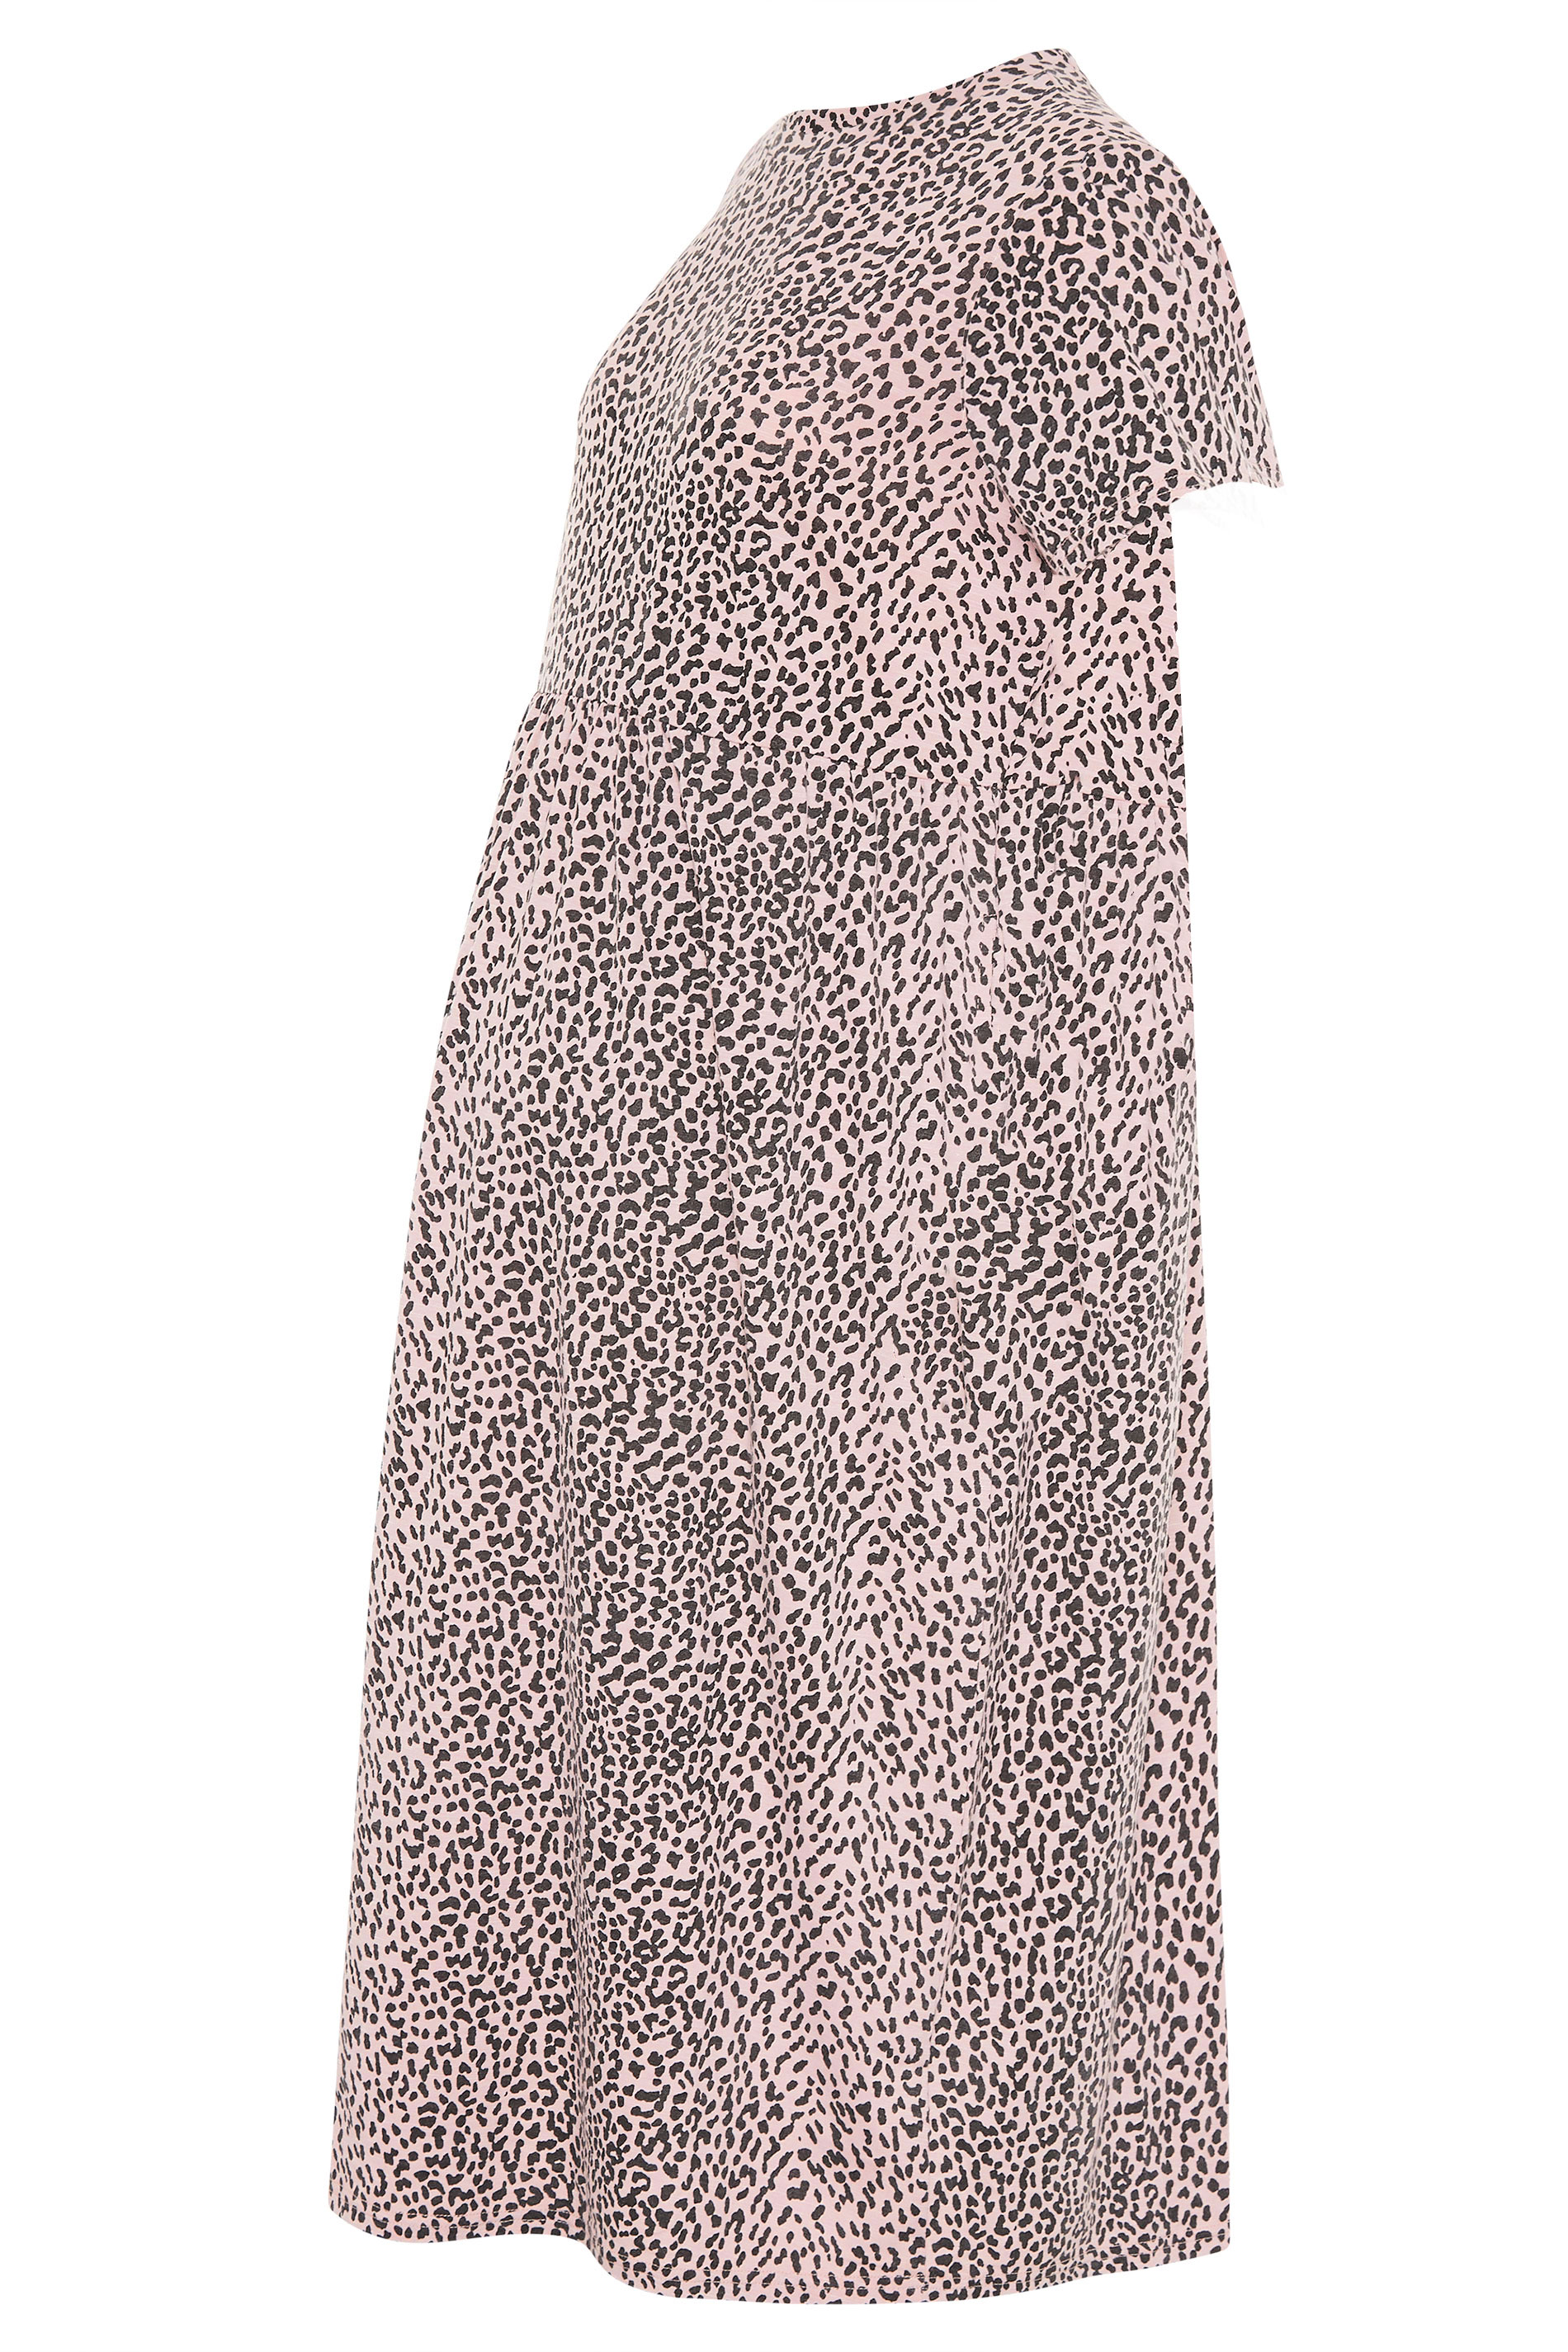 LTS Maternity Pink Leopard Print Peplum Mini Dress | Long Tall Sally 2